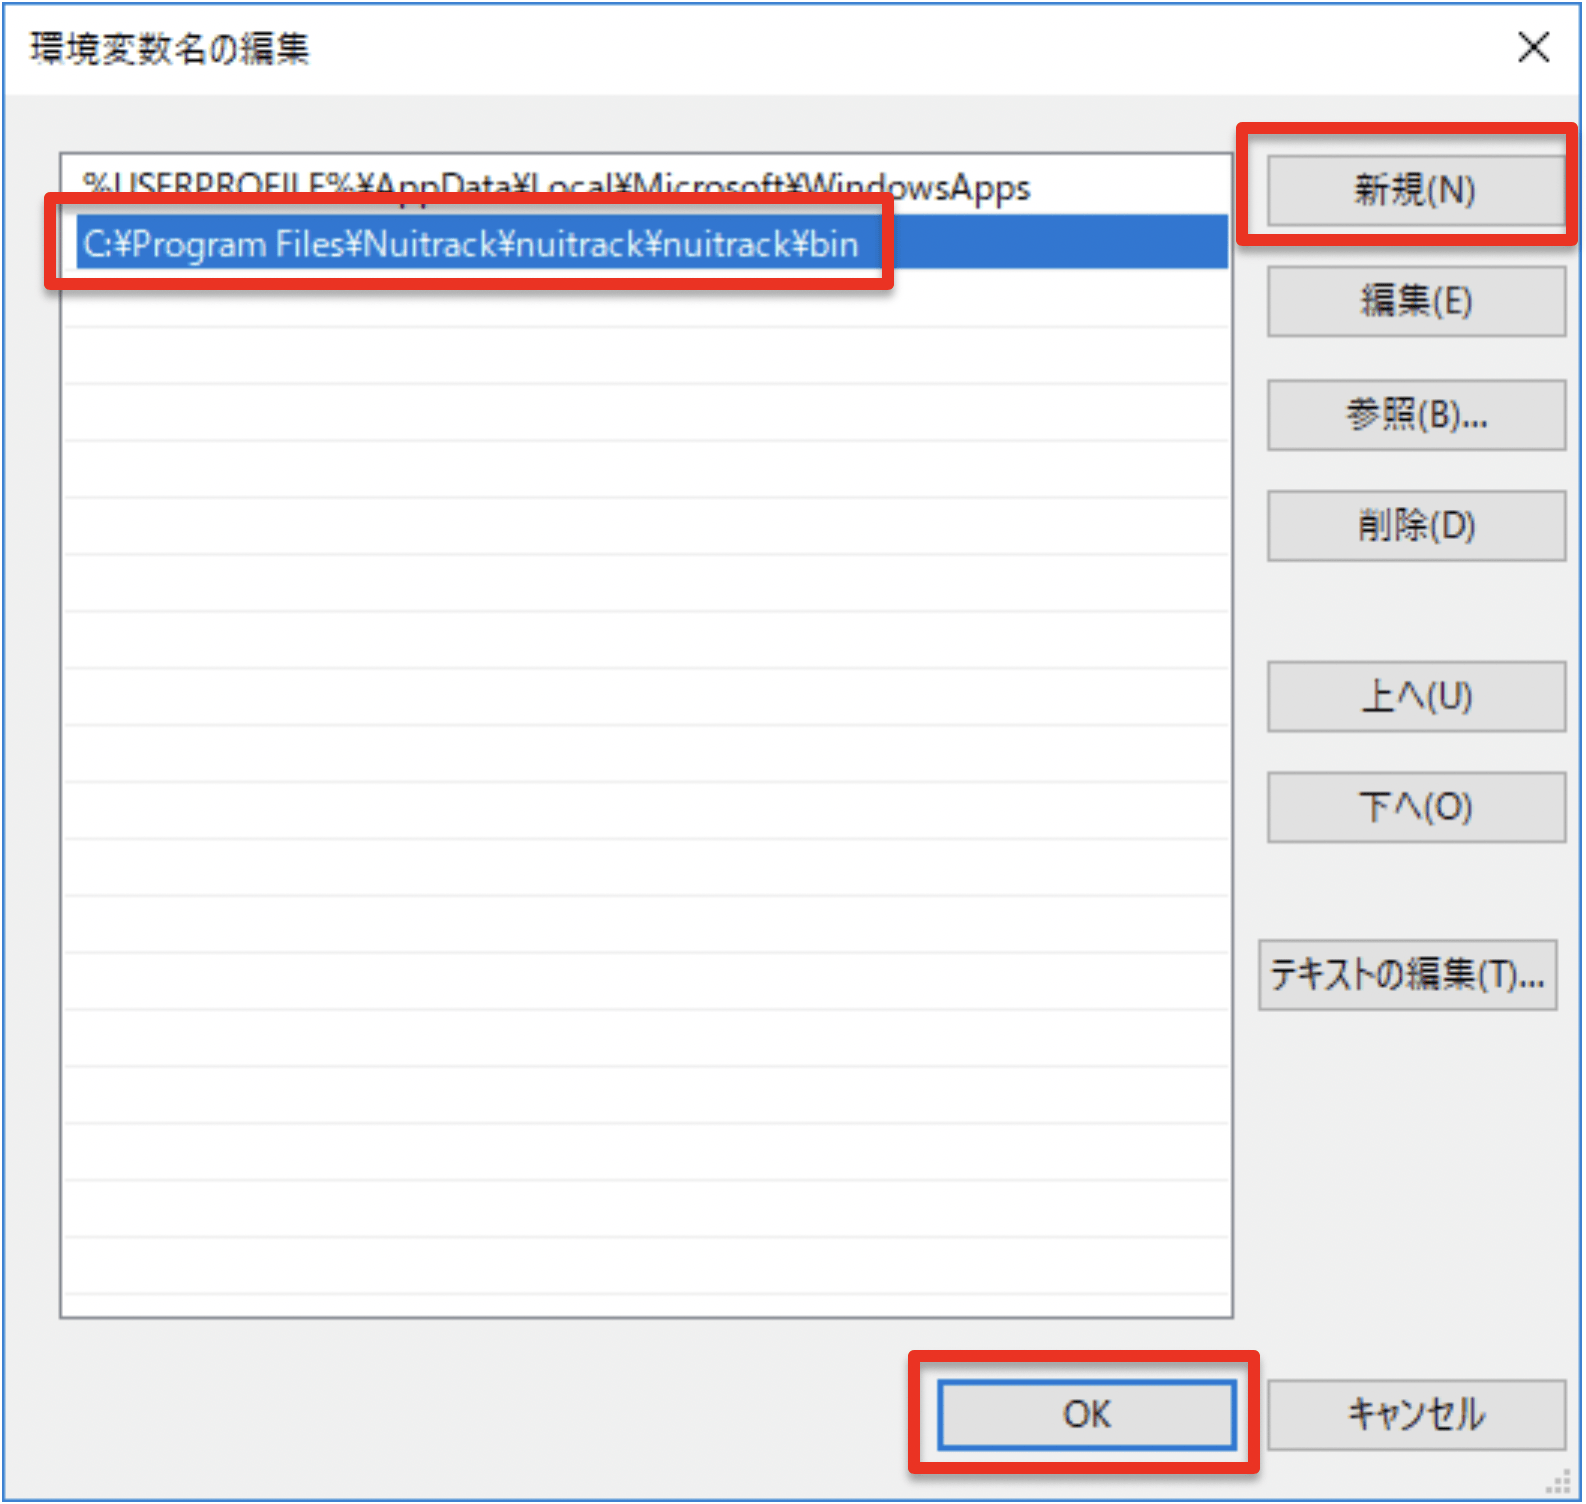 右上「新規」ボタンをクリックして「C:¥Program Files¥Nuitrack¥nuitrack¥nuitrack¥bin」と入力後「OK」をクリック